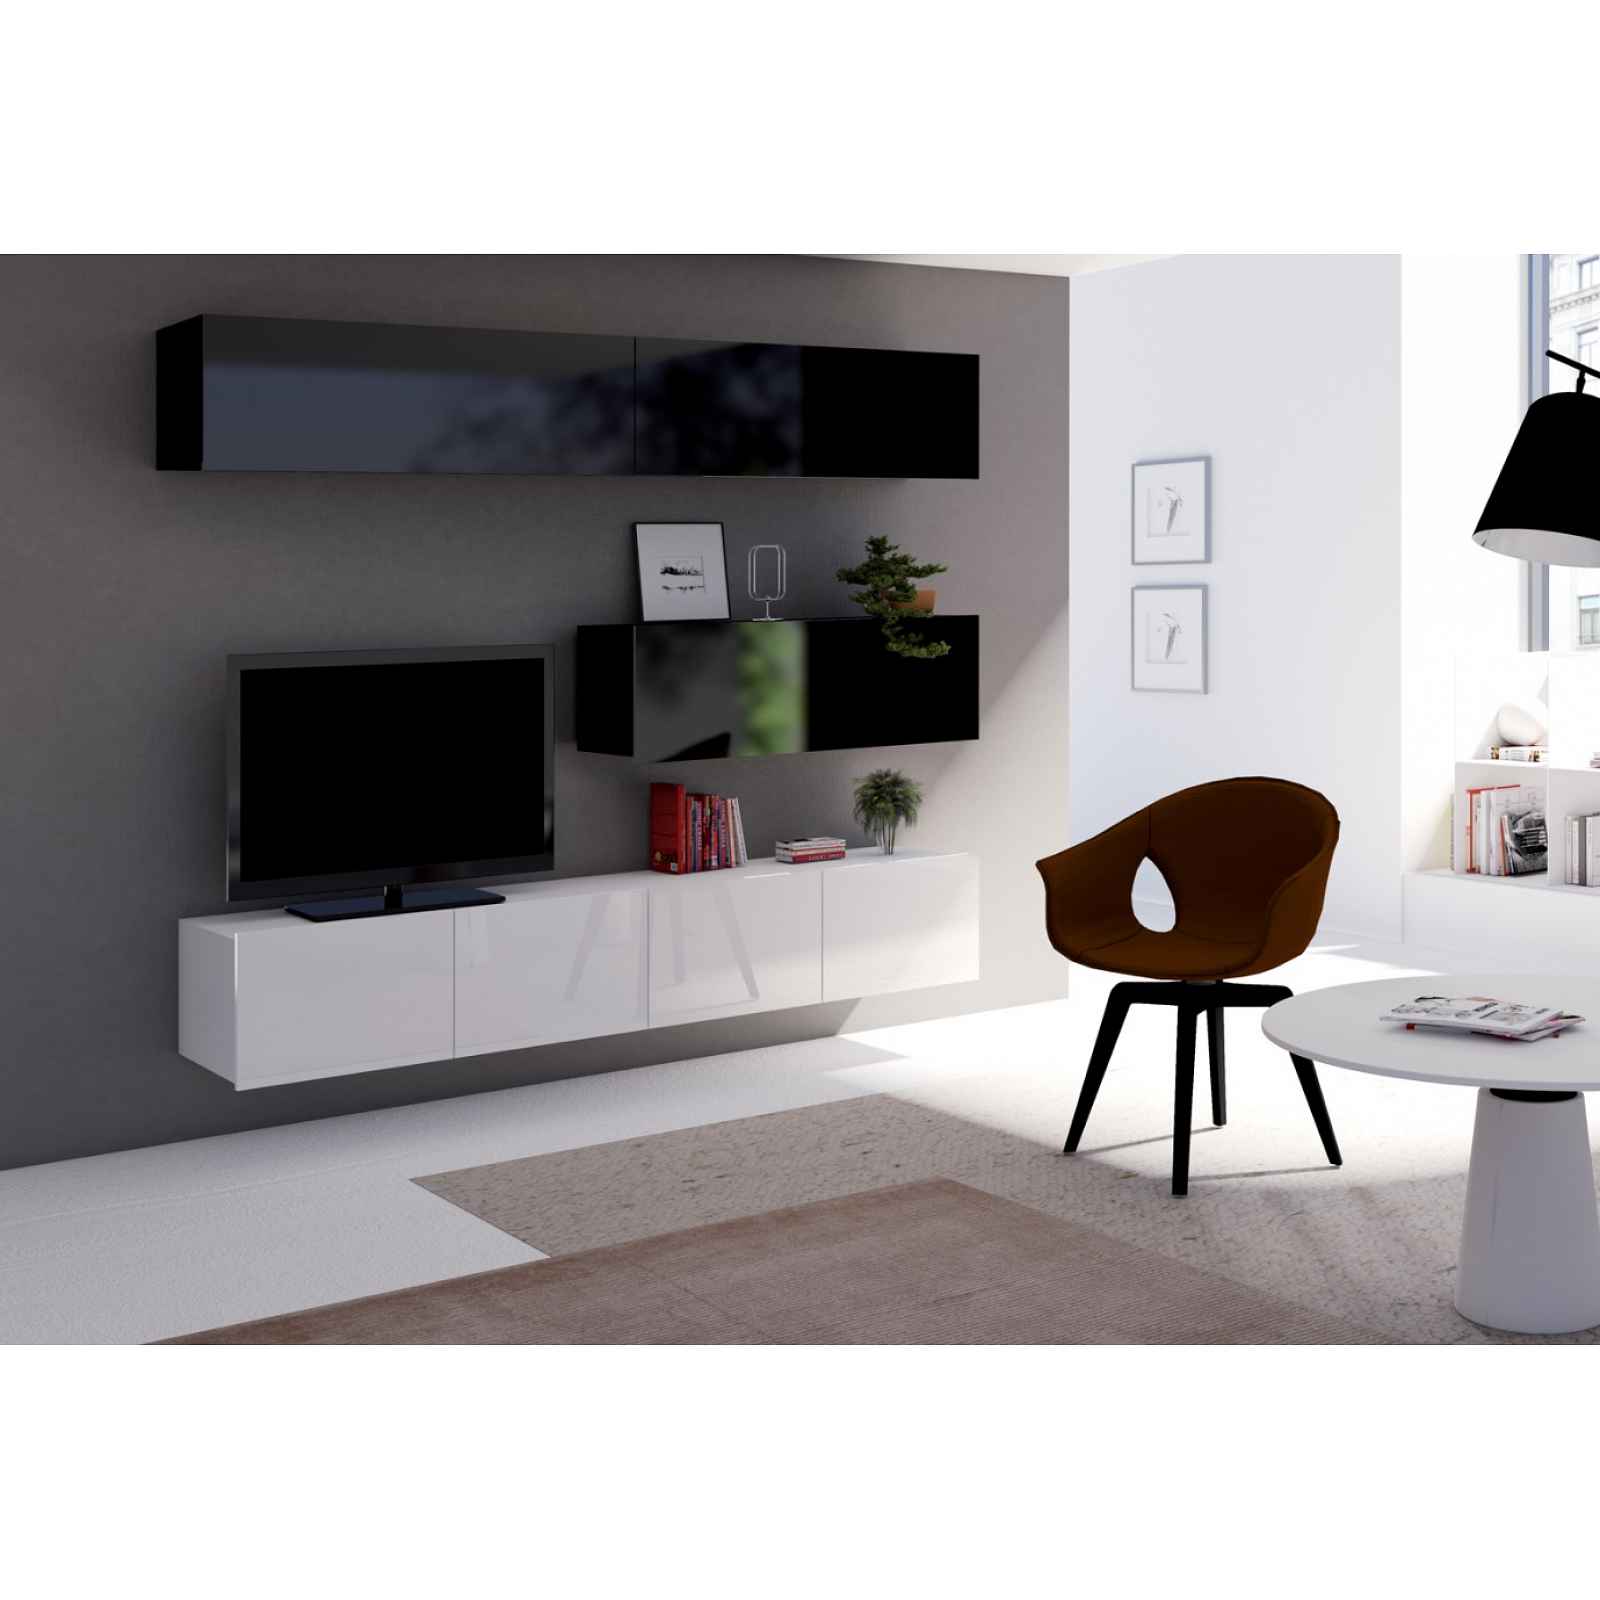 Moderní bytový nábytek Celeste L černo-bílý